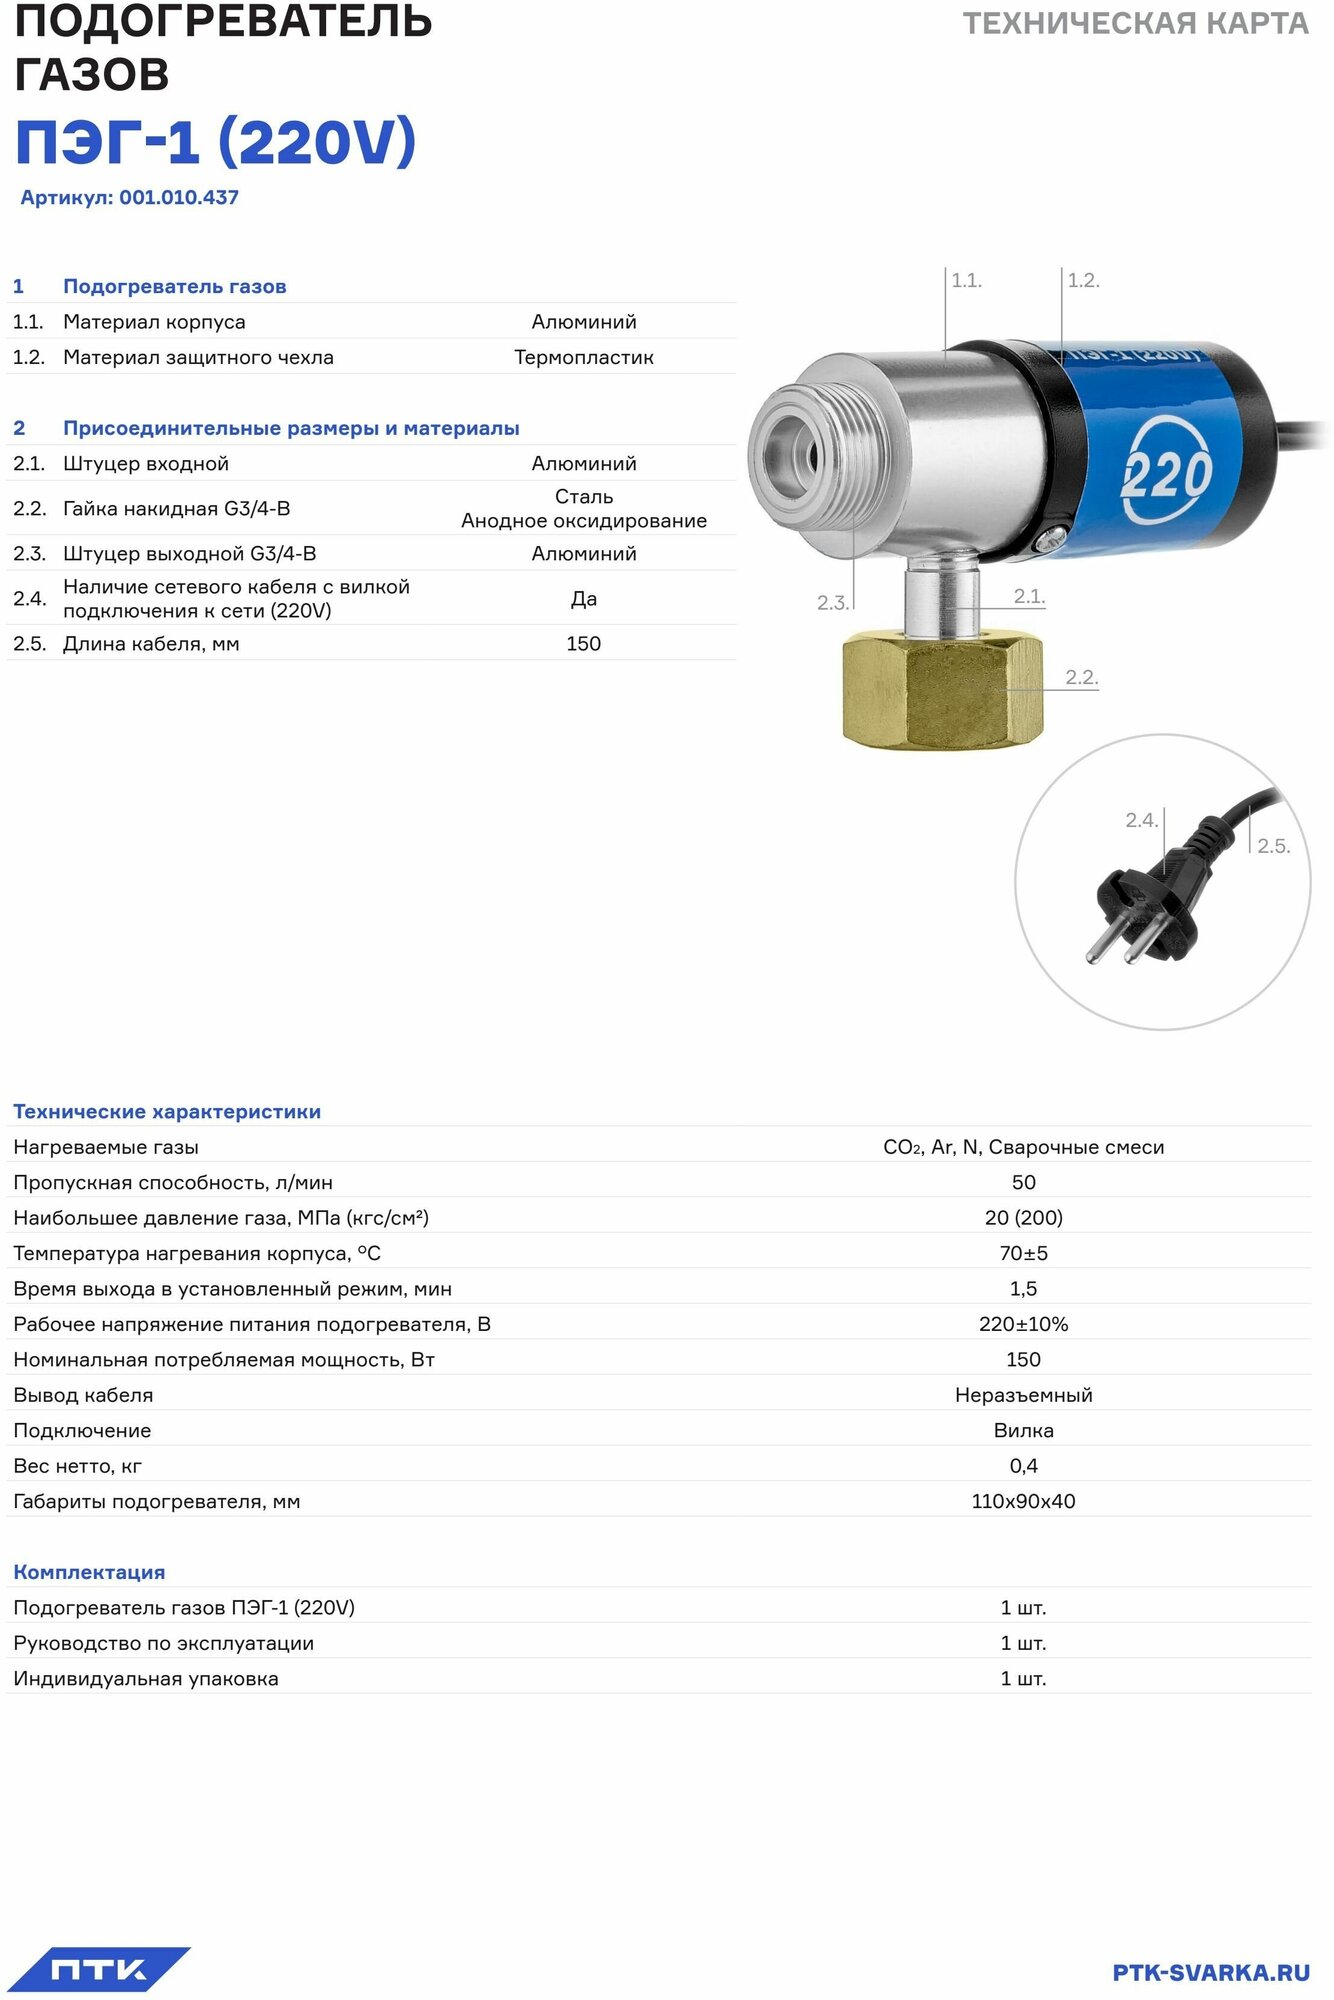 Подогреватель газа ПТК ПЭГ-1 (220V)